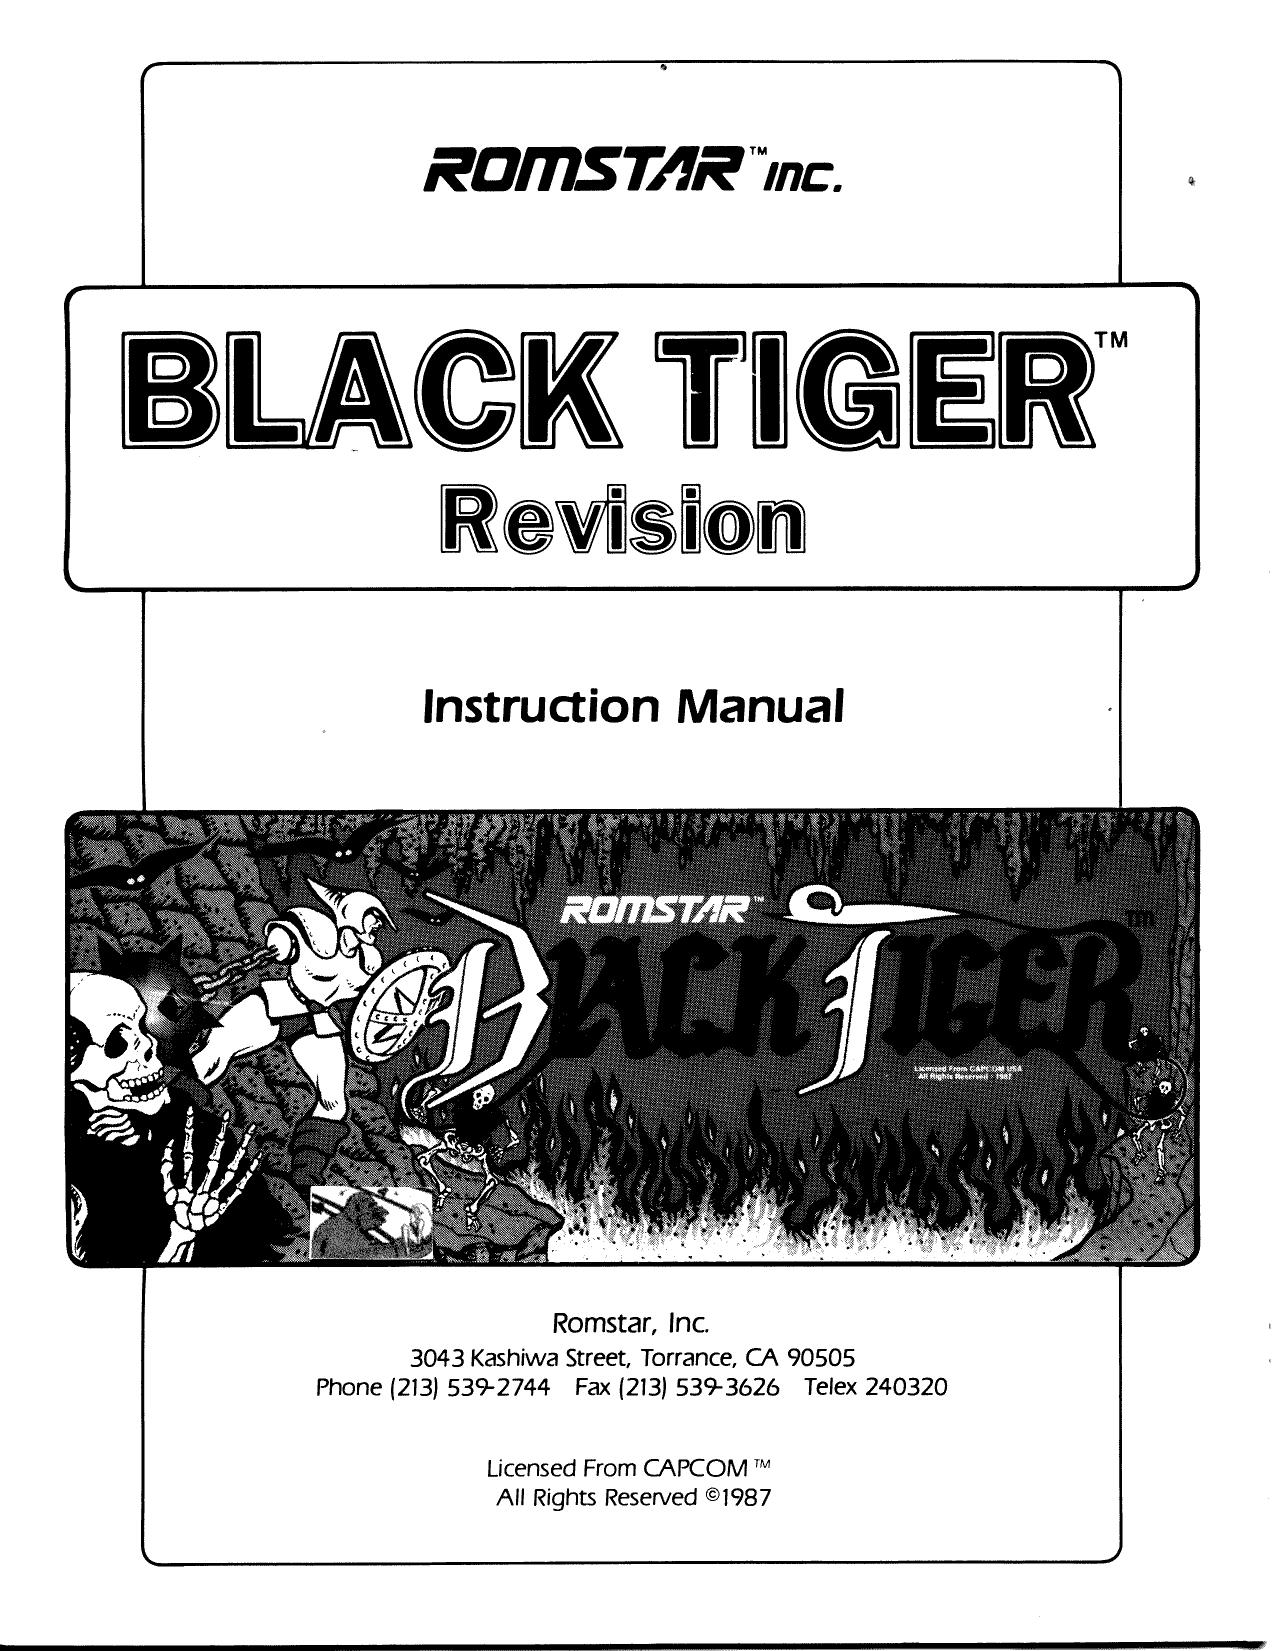 BlackTiger Manual